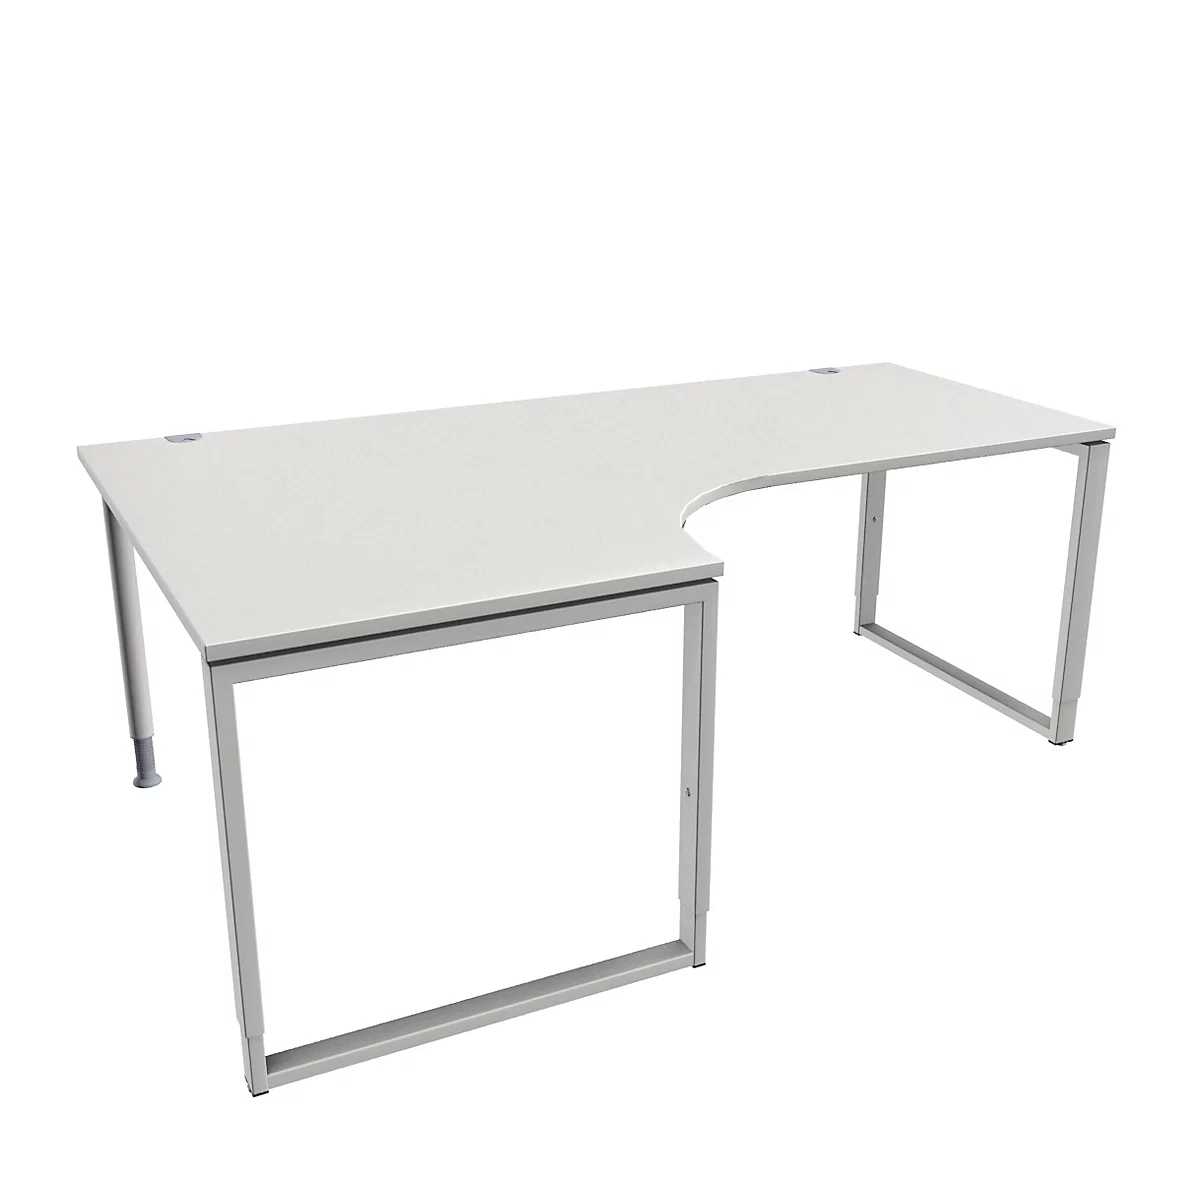 Schäfer Shop Genius MODENA FLEX escritorio angular, 90°, pie de soporte, fijación a la izquierda, ancho 2000 mm, gris claro